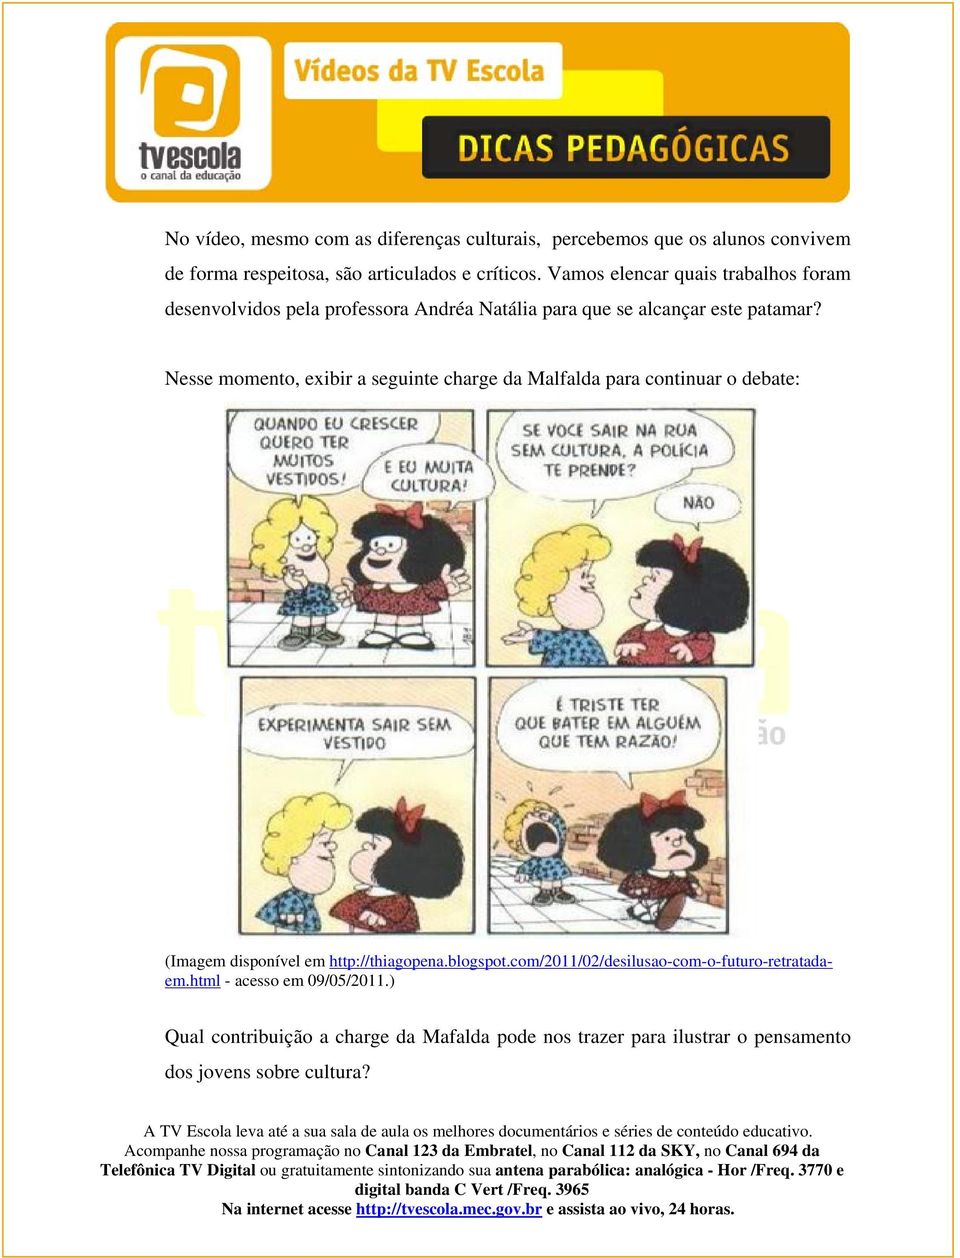 Nesse momento, exibir a seguinte charge da Malfalda para continuar o debate: (Imagem disponível em http://thiagopena.blogspot.